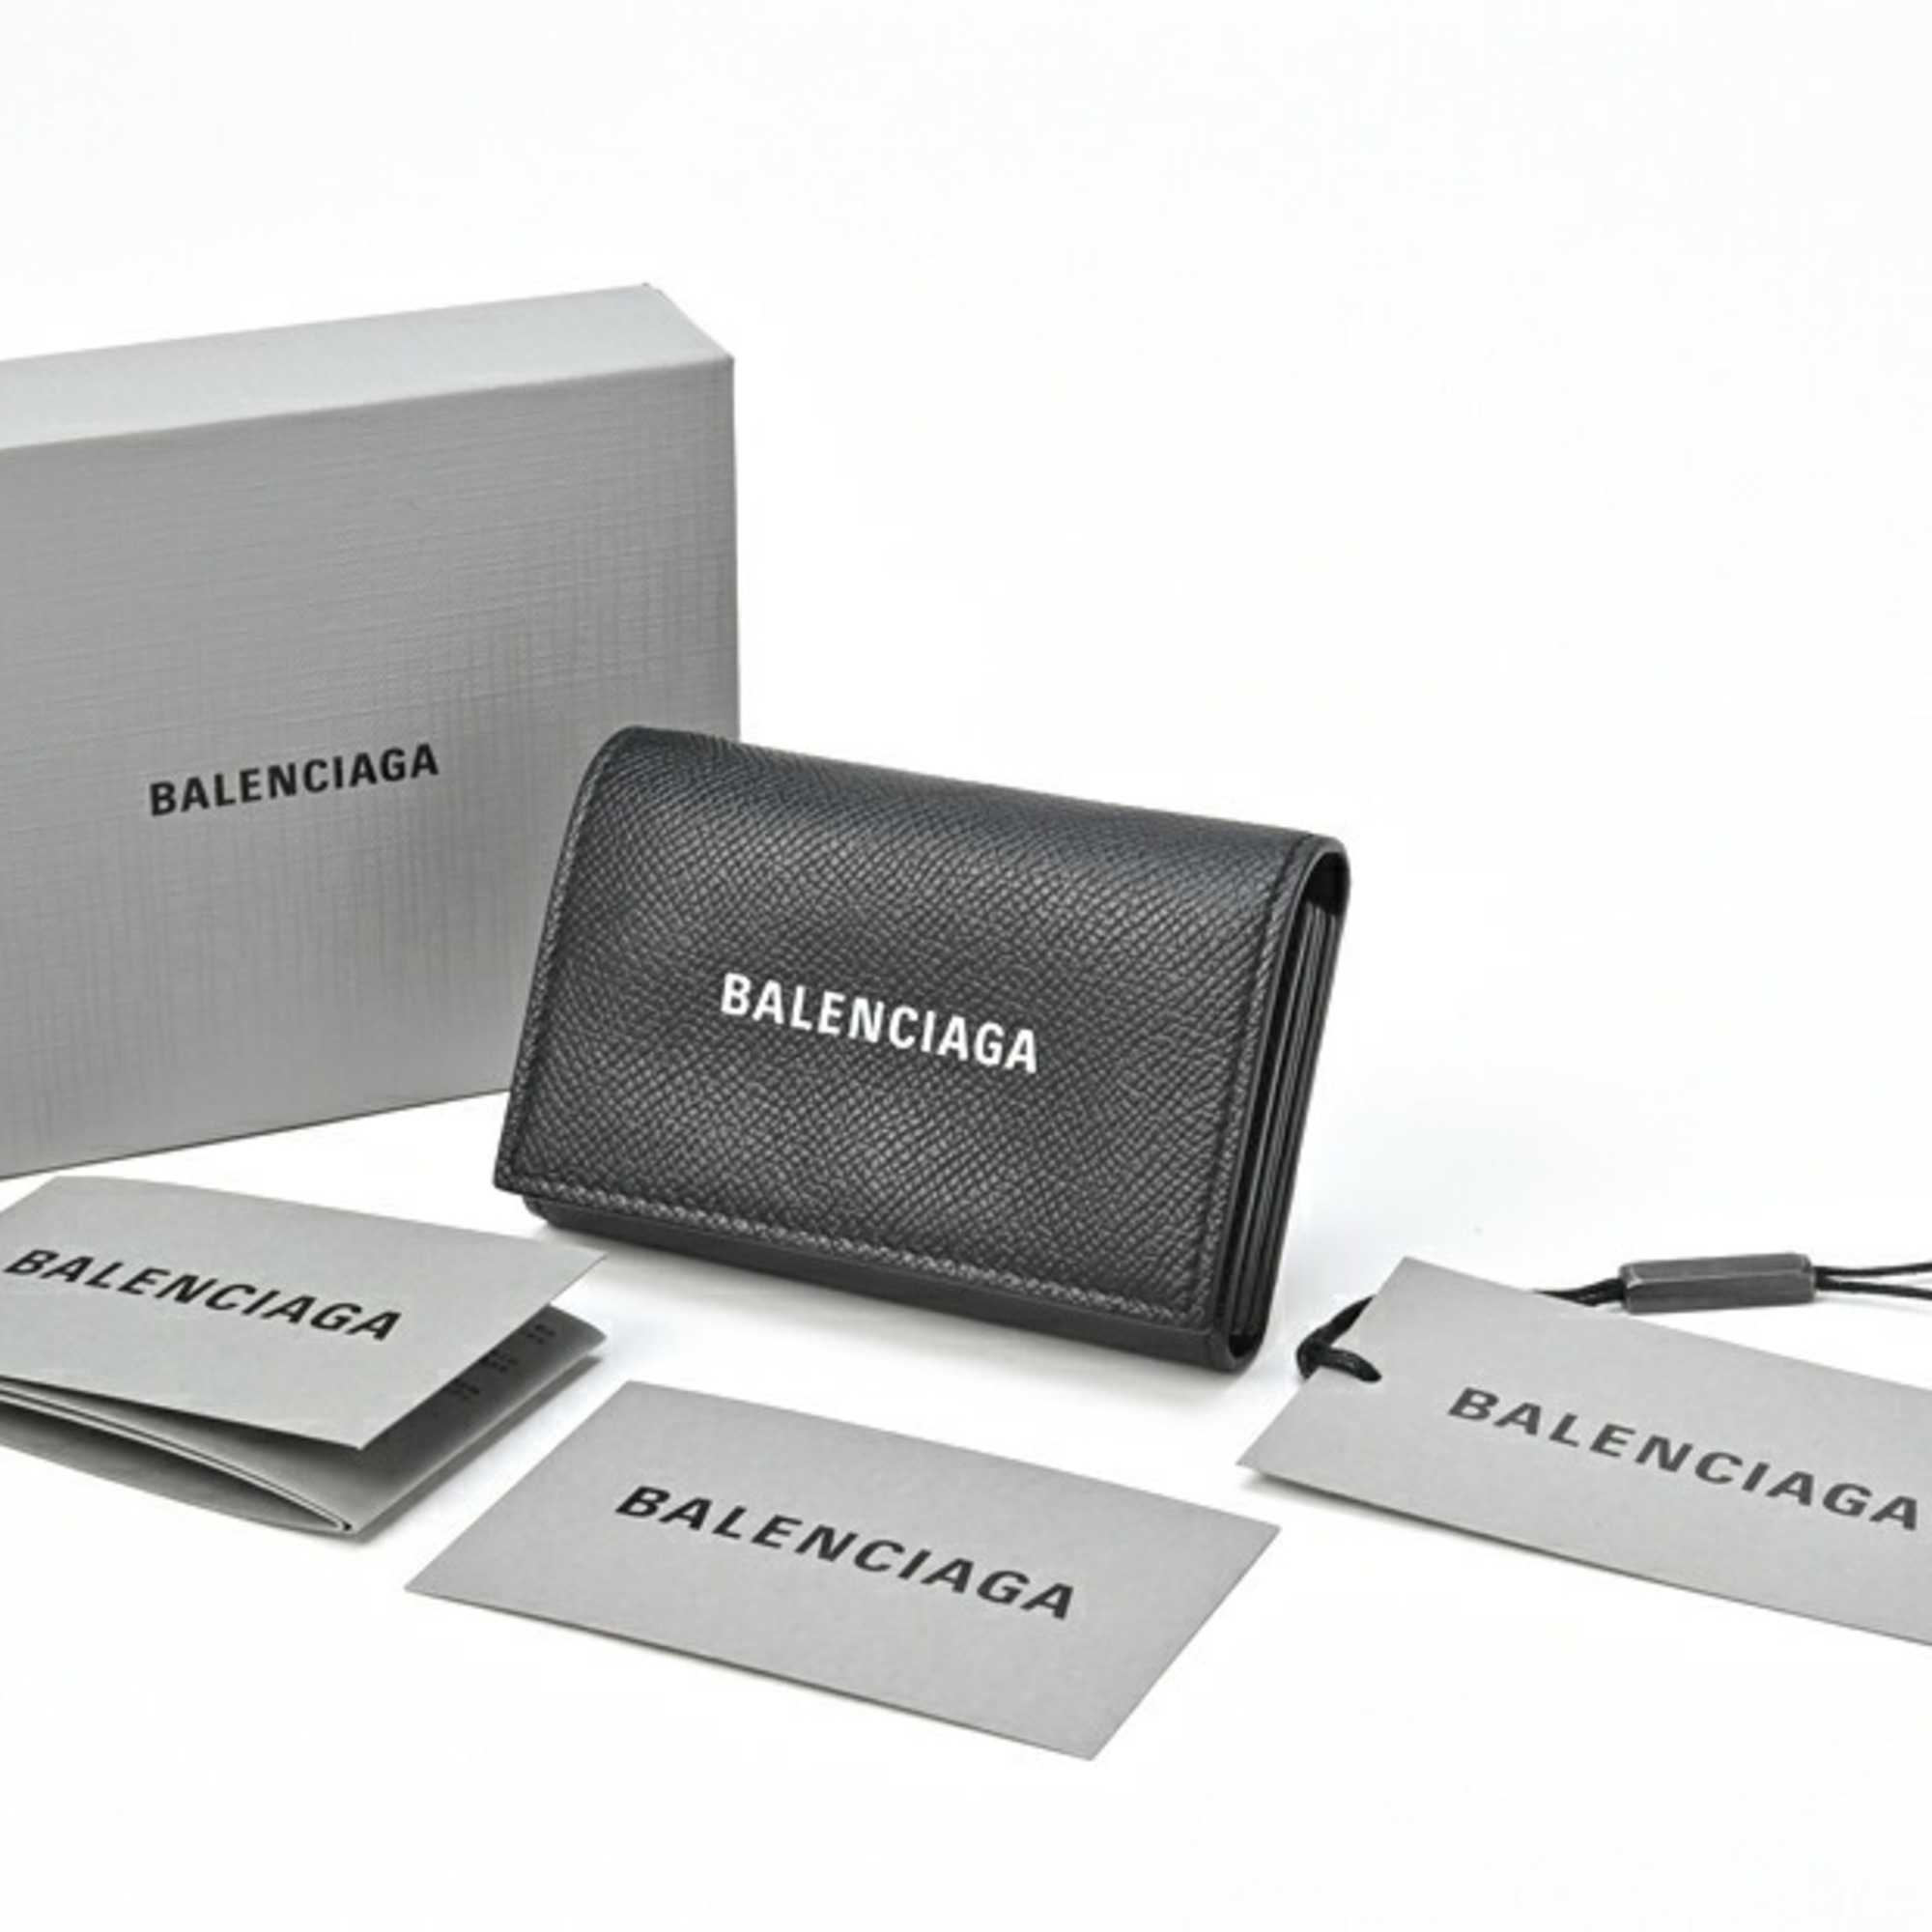 Balenciaga Everyday Accordion Card Case 594313 Black